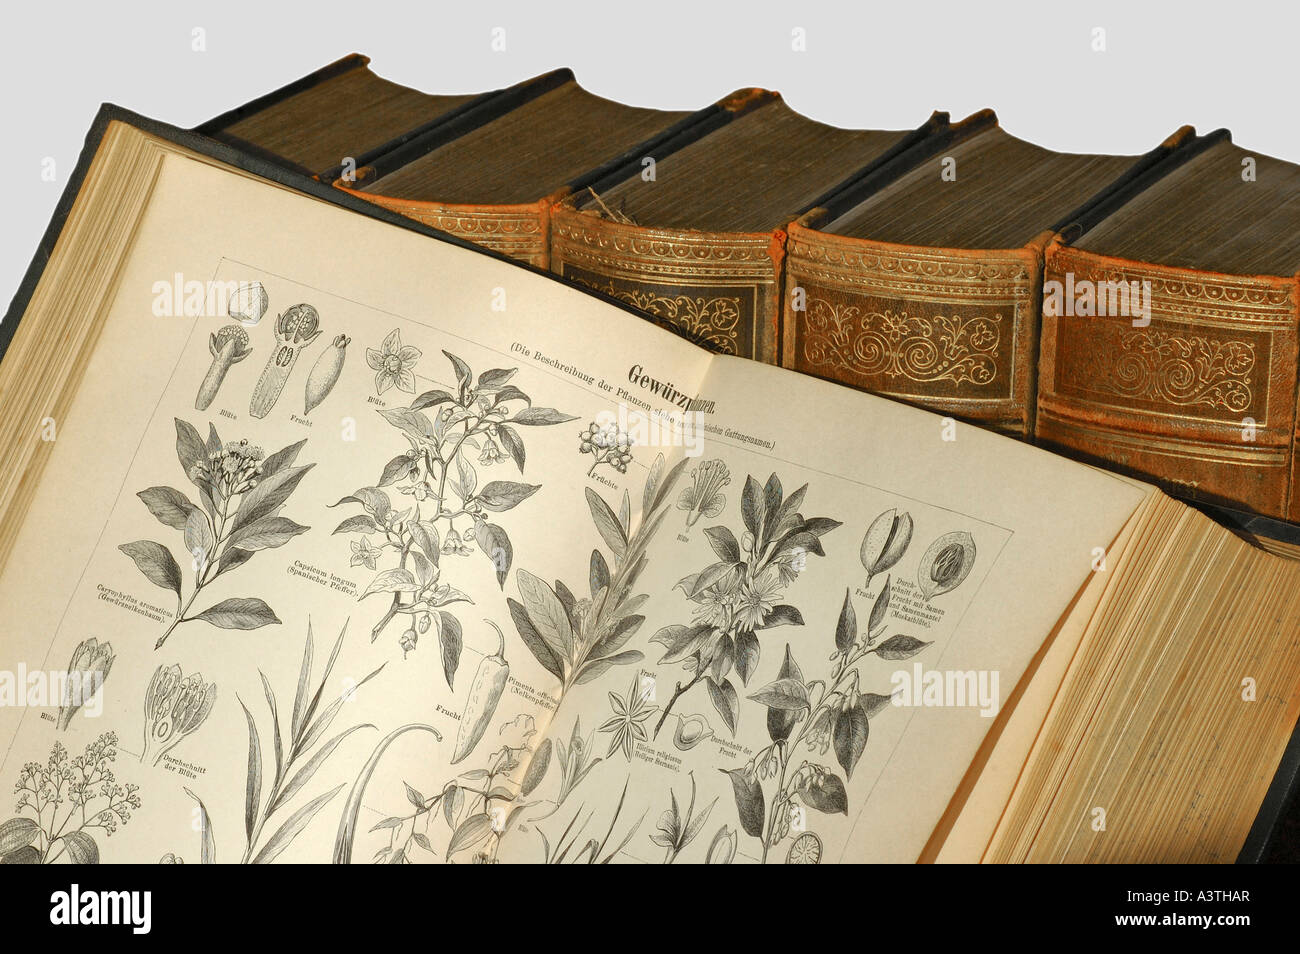 Illustrationen von Gewürzpflanzen in einer alten Enzyklopädie Stockfoto